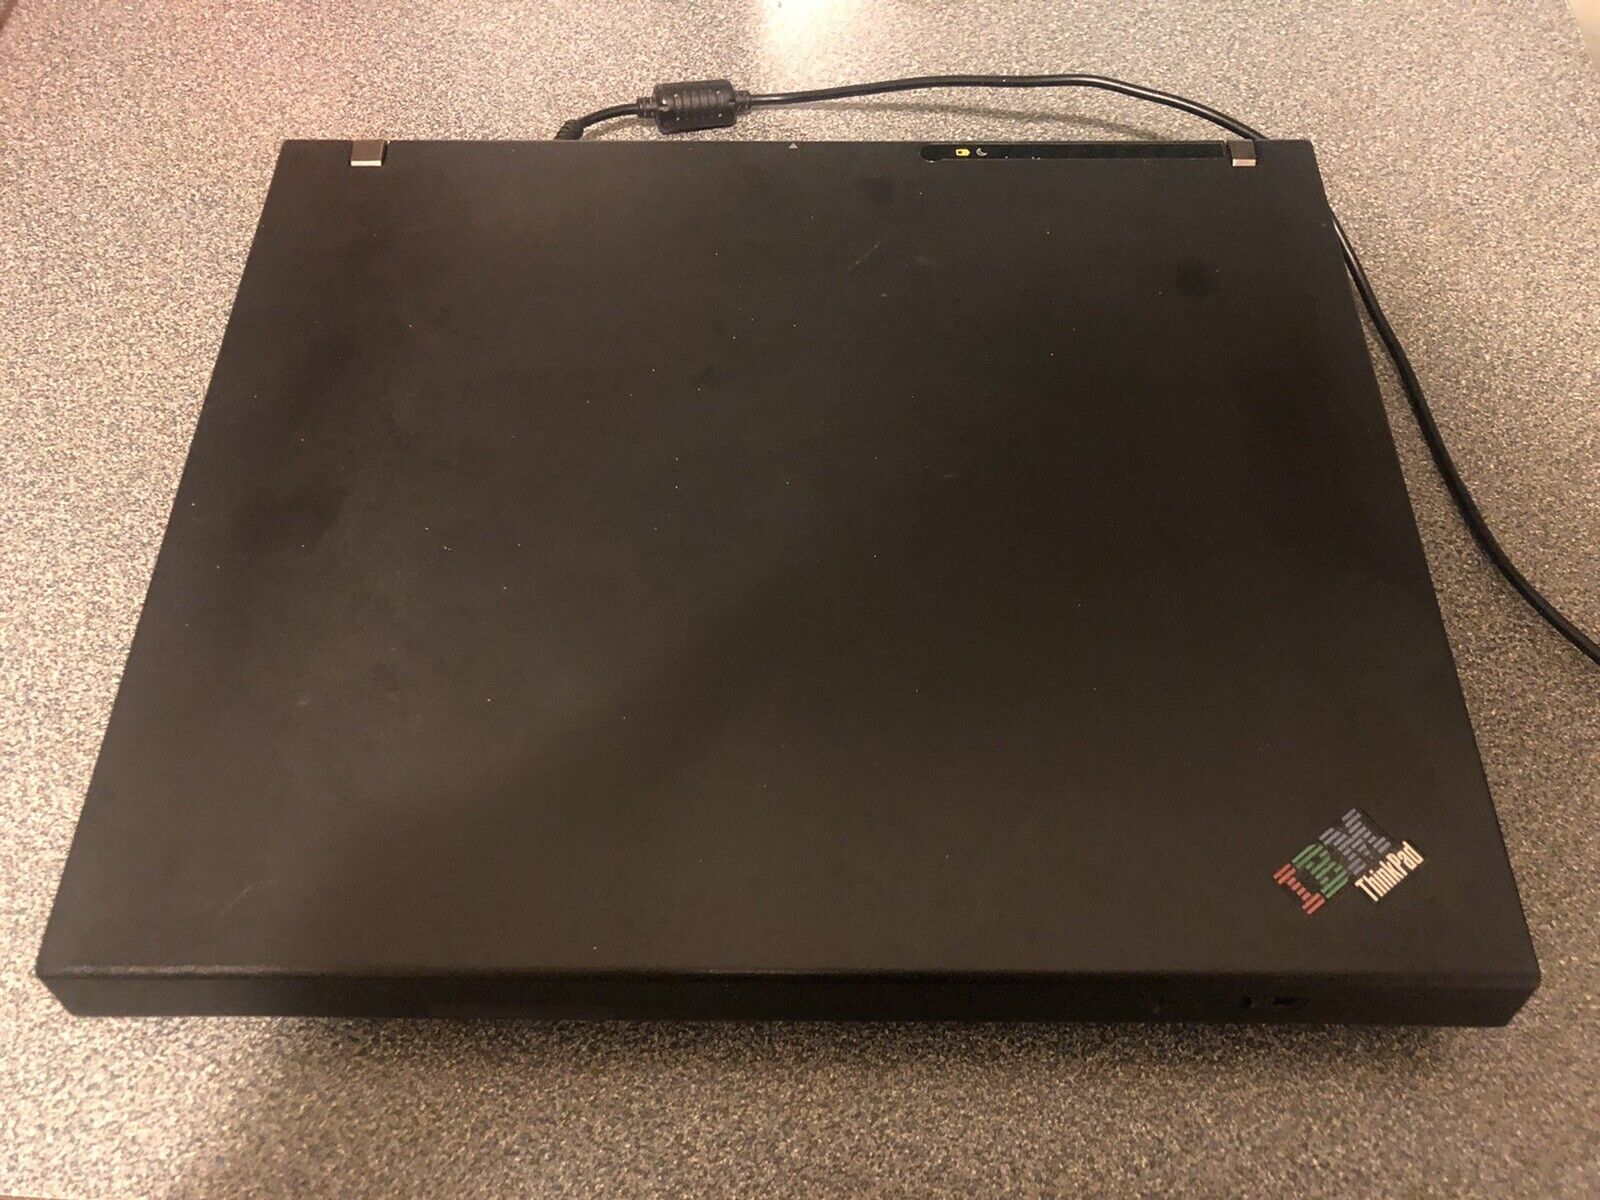 IBM ThinkPad R50e Model 1842-SLU